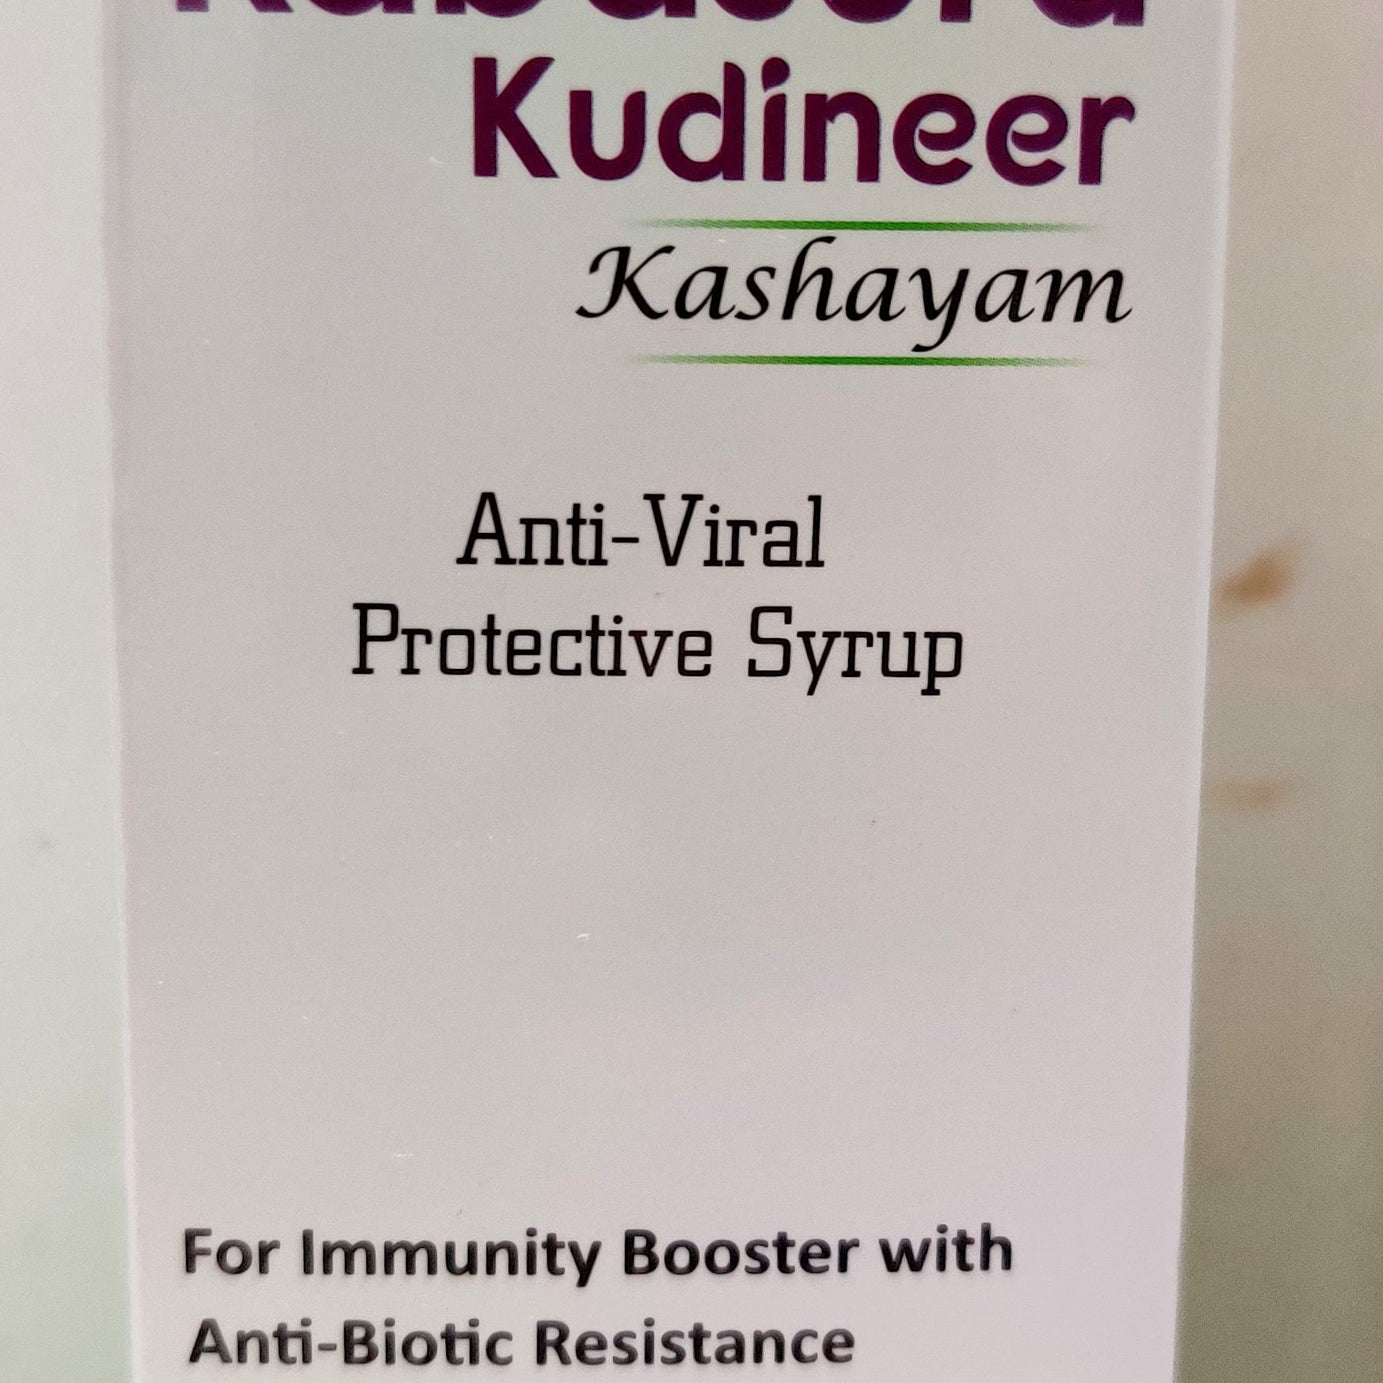 Shop Kabasura Kudineer Kashayam 100ml at price 95.00 from MB Pharma Online - Ayush Care